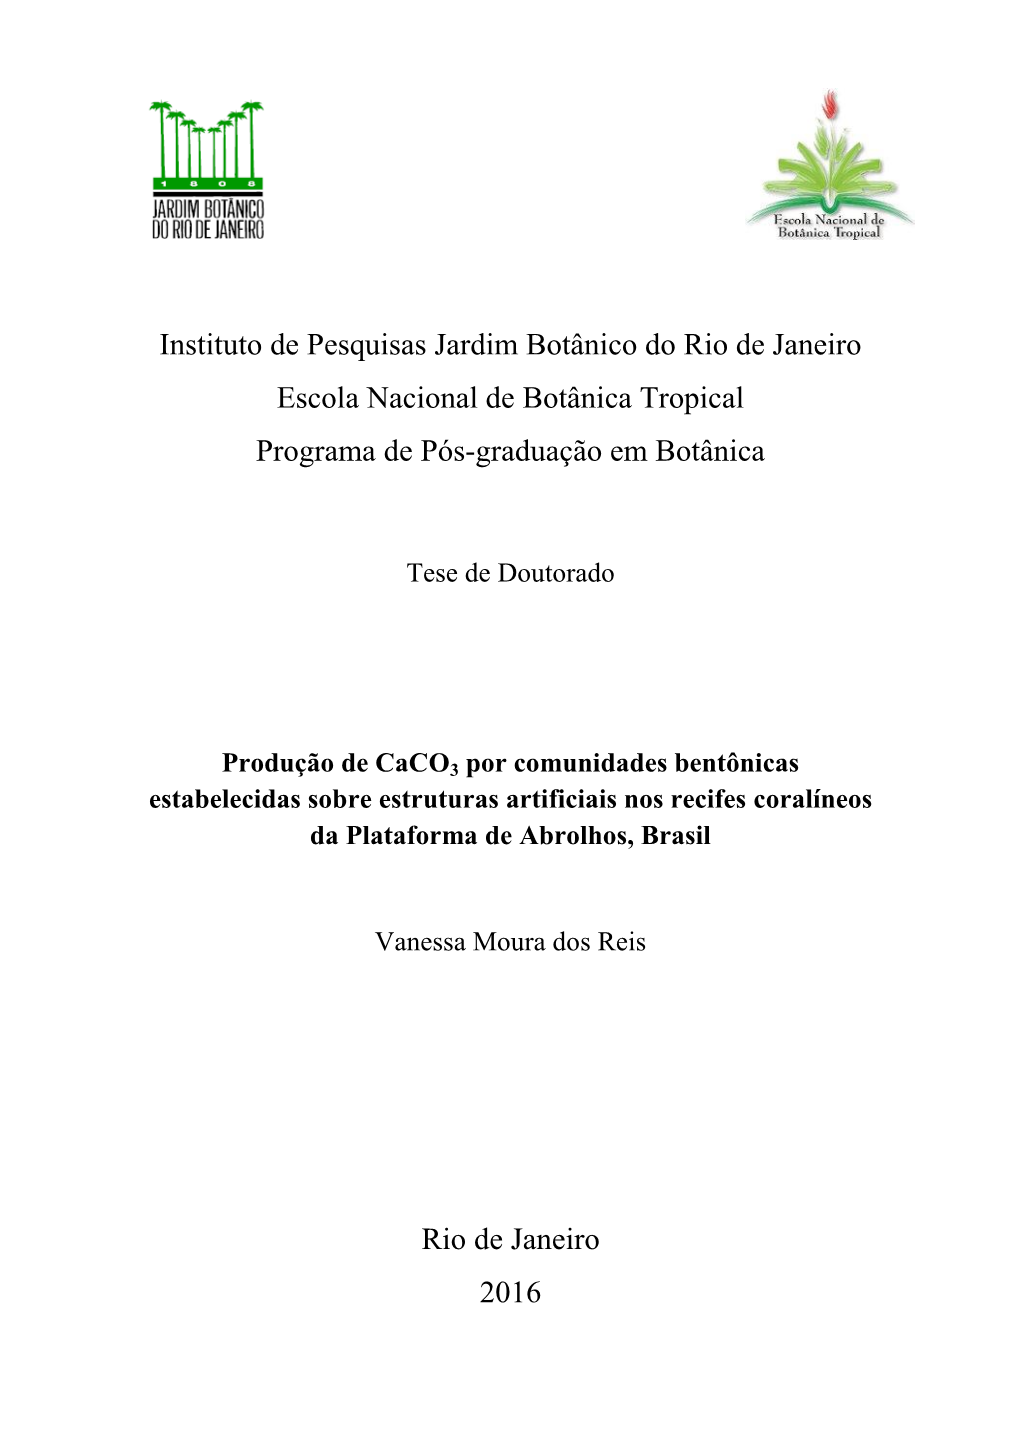 Instituto De Pesquisas Jardim Botânico Do Rio De Janeiro Escola Nacional De Botânica Tropical Programa De Pós-Graduação Em Botânica